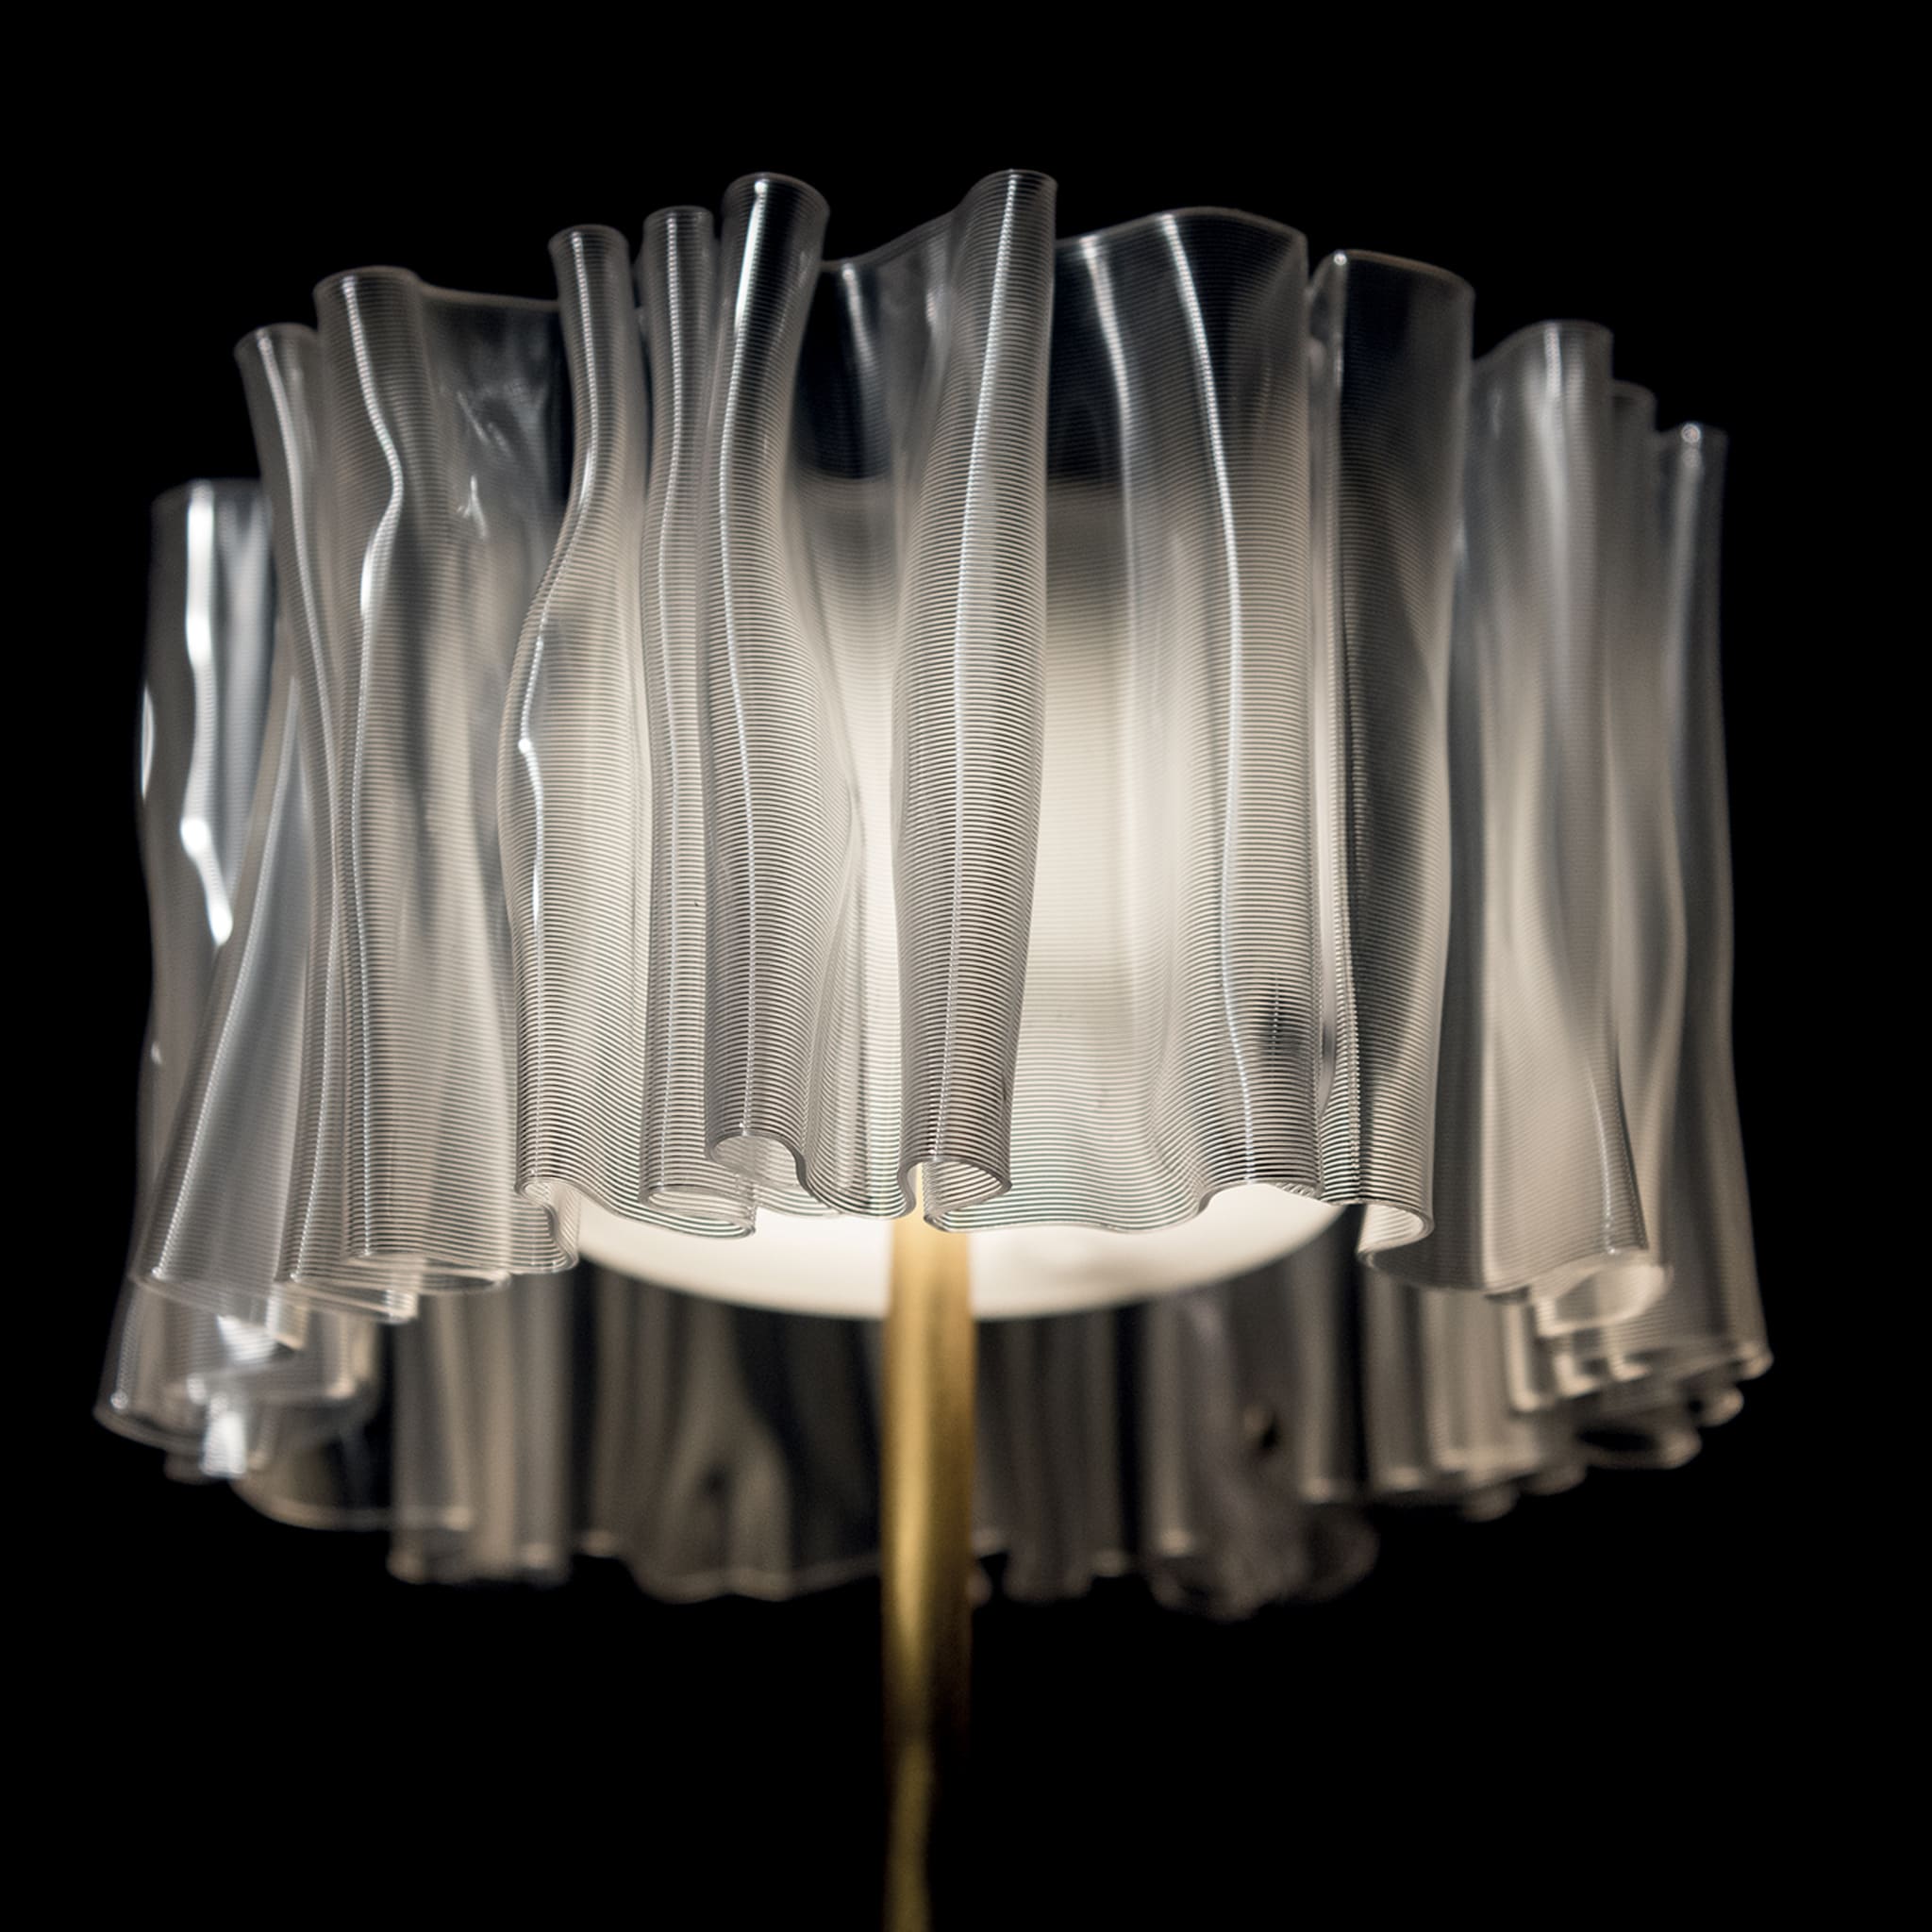 Accordéon Battery White Prisma Table Lamp by Marc Sadler - Alternative view 2